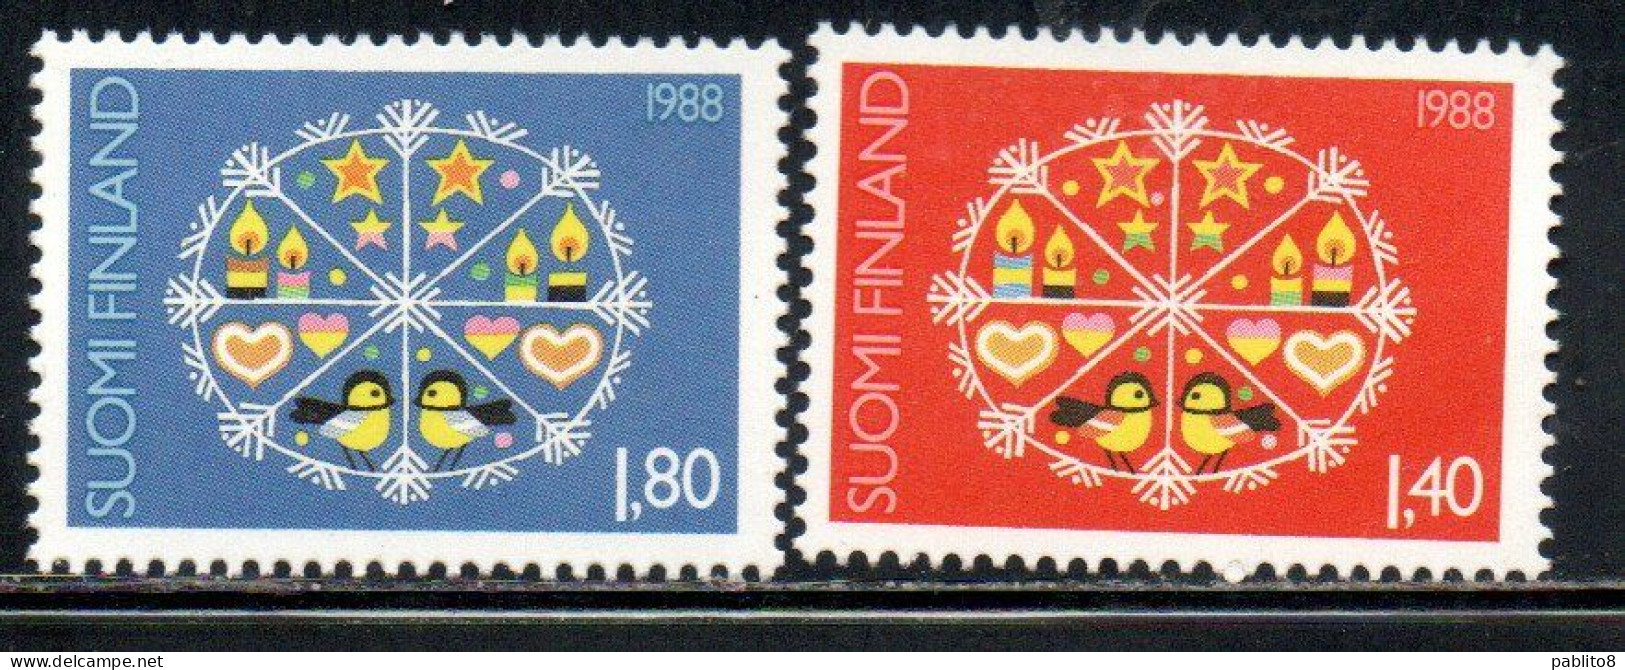 SUOMI FINLAND FINLANDIA FINLANDE 1988 CHRISTMAS NATALE NOEL WEIHNACHTEN NAVIDAD COMPLETE SET SERIE COMPLETA MNH - Unused Stamps